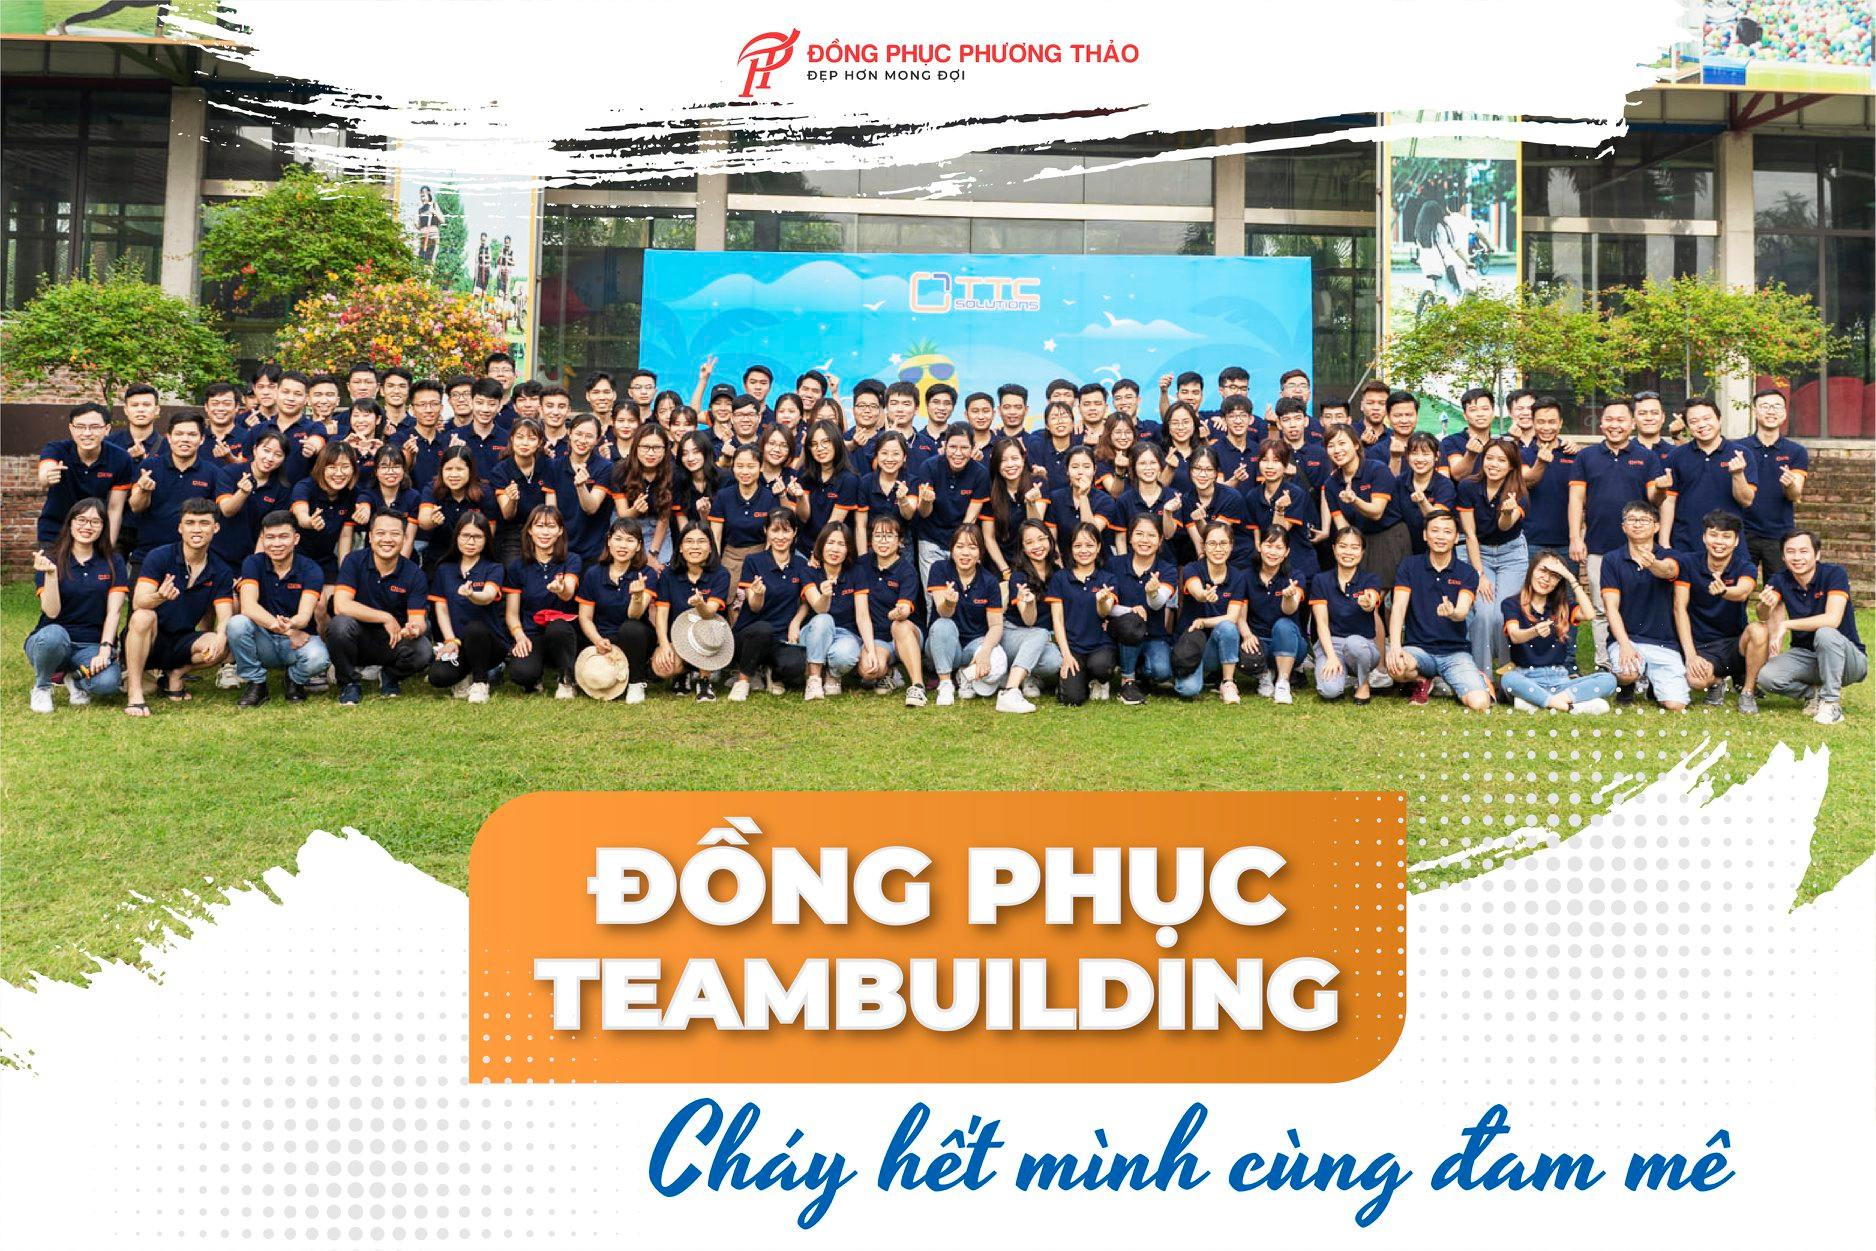 Hình ảnh khách hàng Phương Thảo mặc đồng phục đi sự kiện teambuilding 